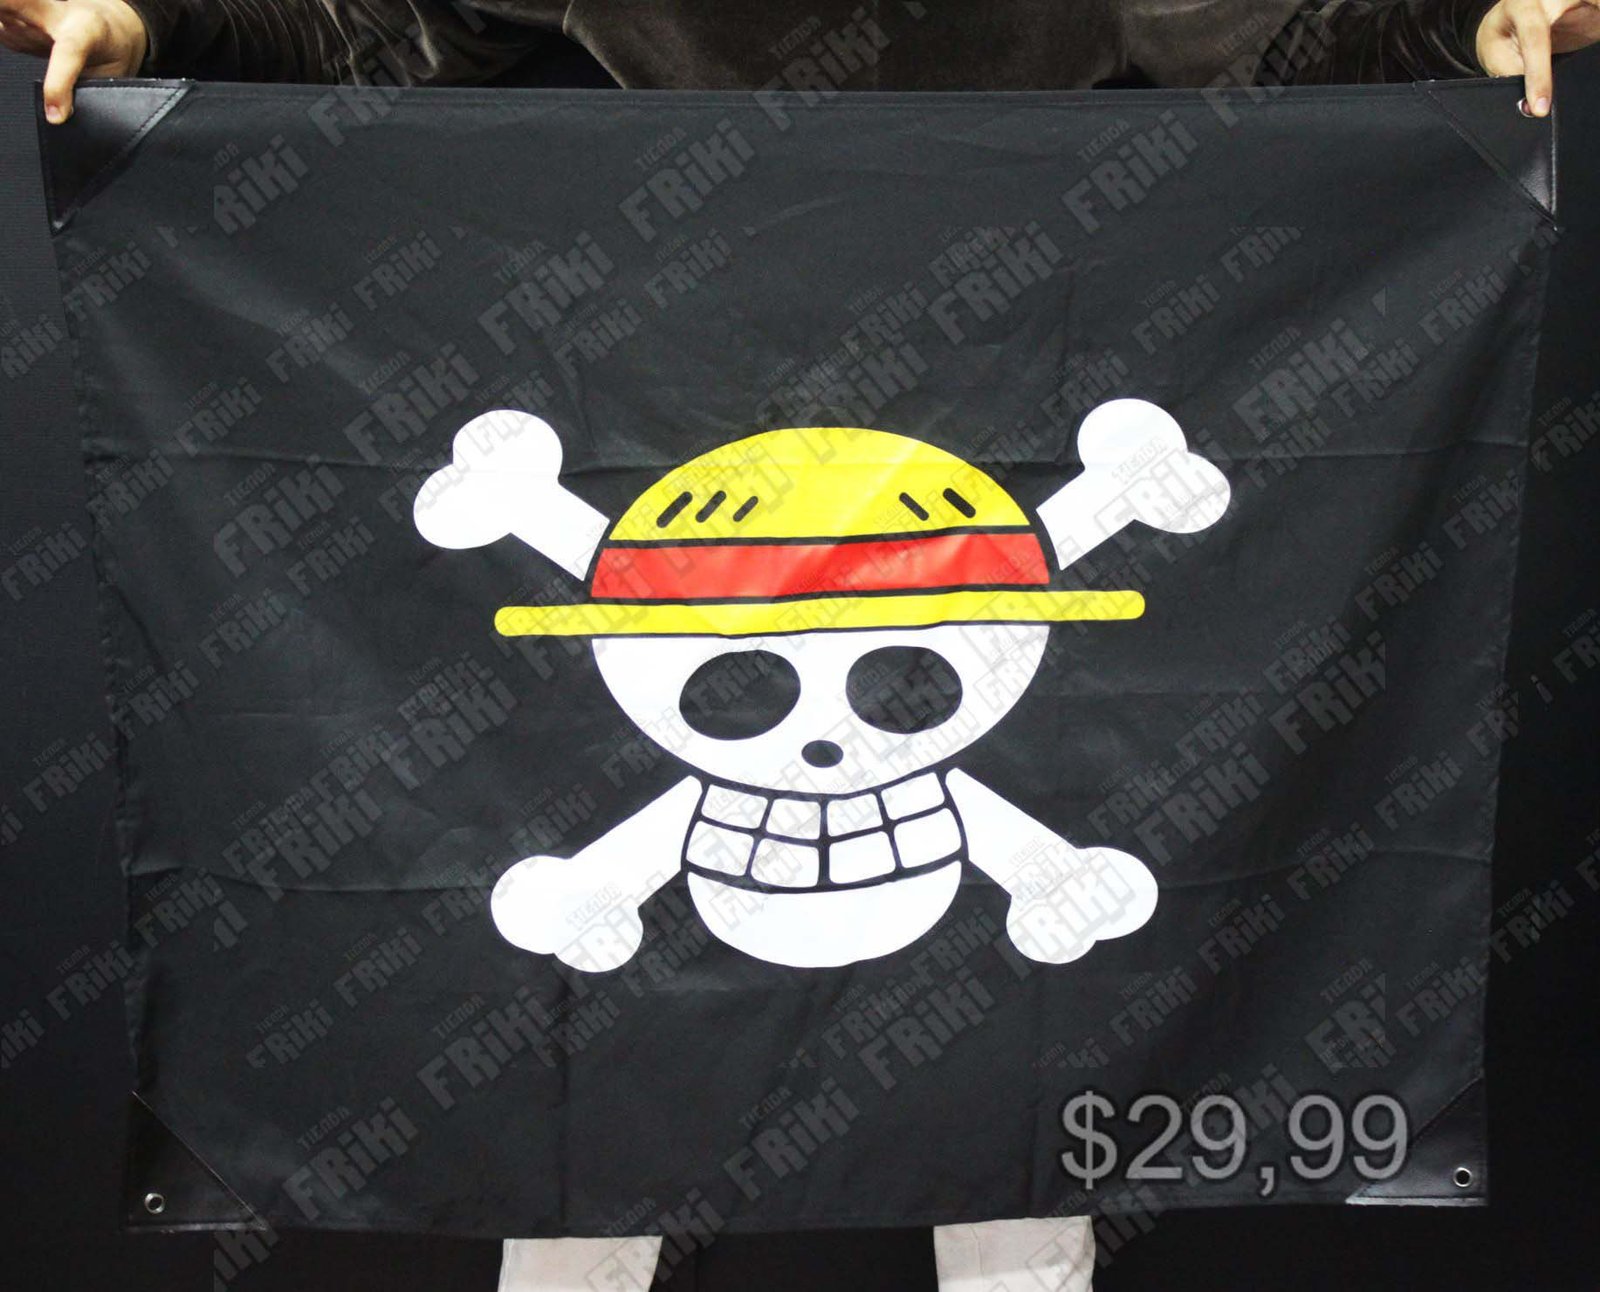 Bandera Pirata Anime One Piece Bonita Apariencia, practico, Hermoso material Poliester, Color Negro Estado Nuevo